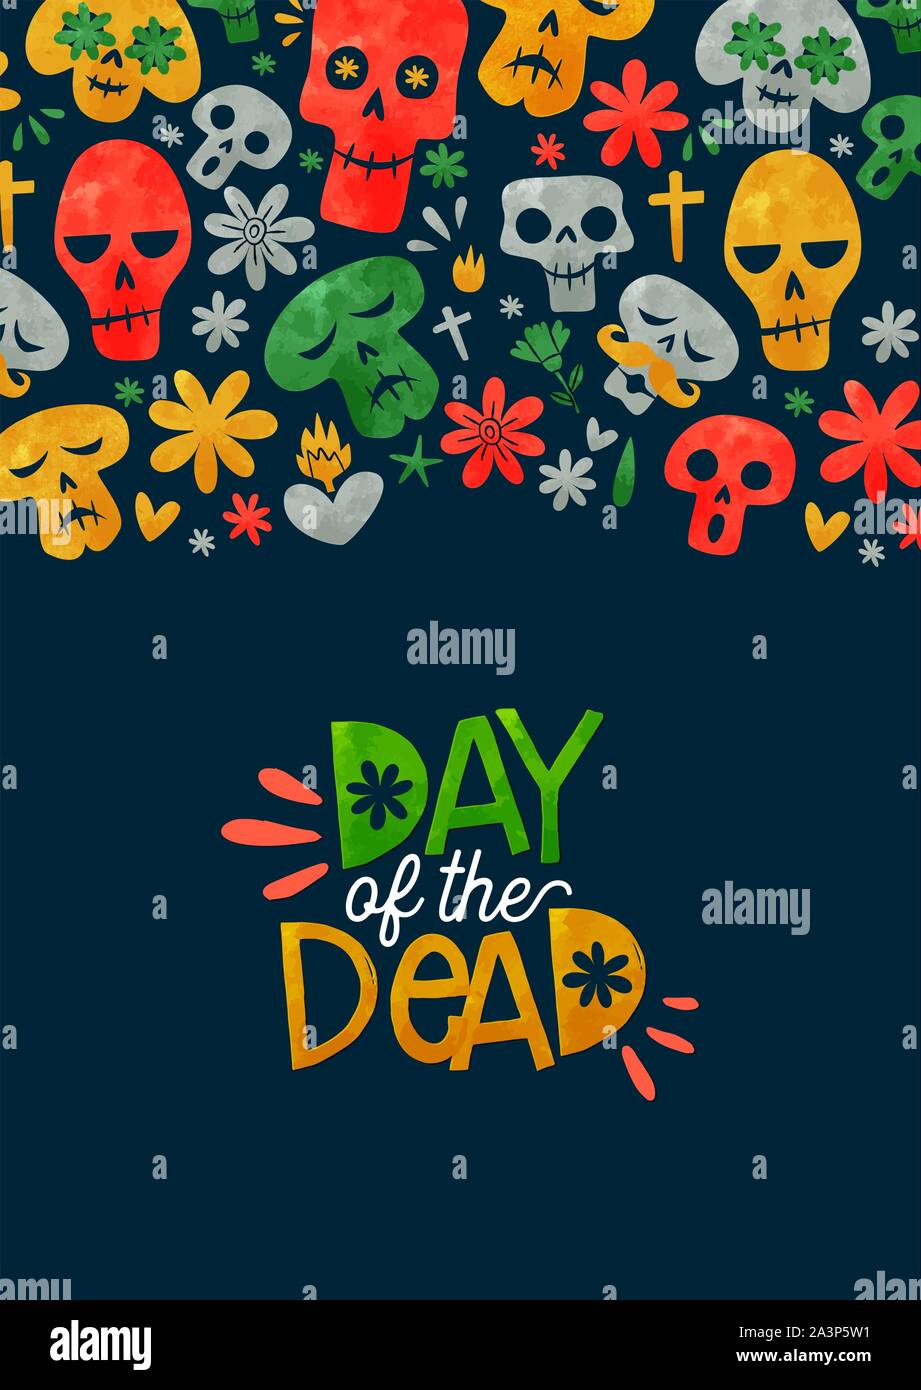 Le Jour des morts l'illustration pour la carte de vœux de l'événement vacances traditionnel mexicain. Funny crâne en sucre et aquarelle décoration florale au Mexique coopération drapeau Illustration de Vecteur